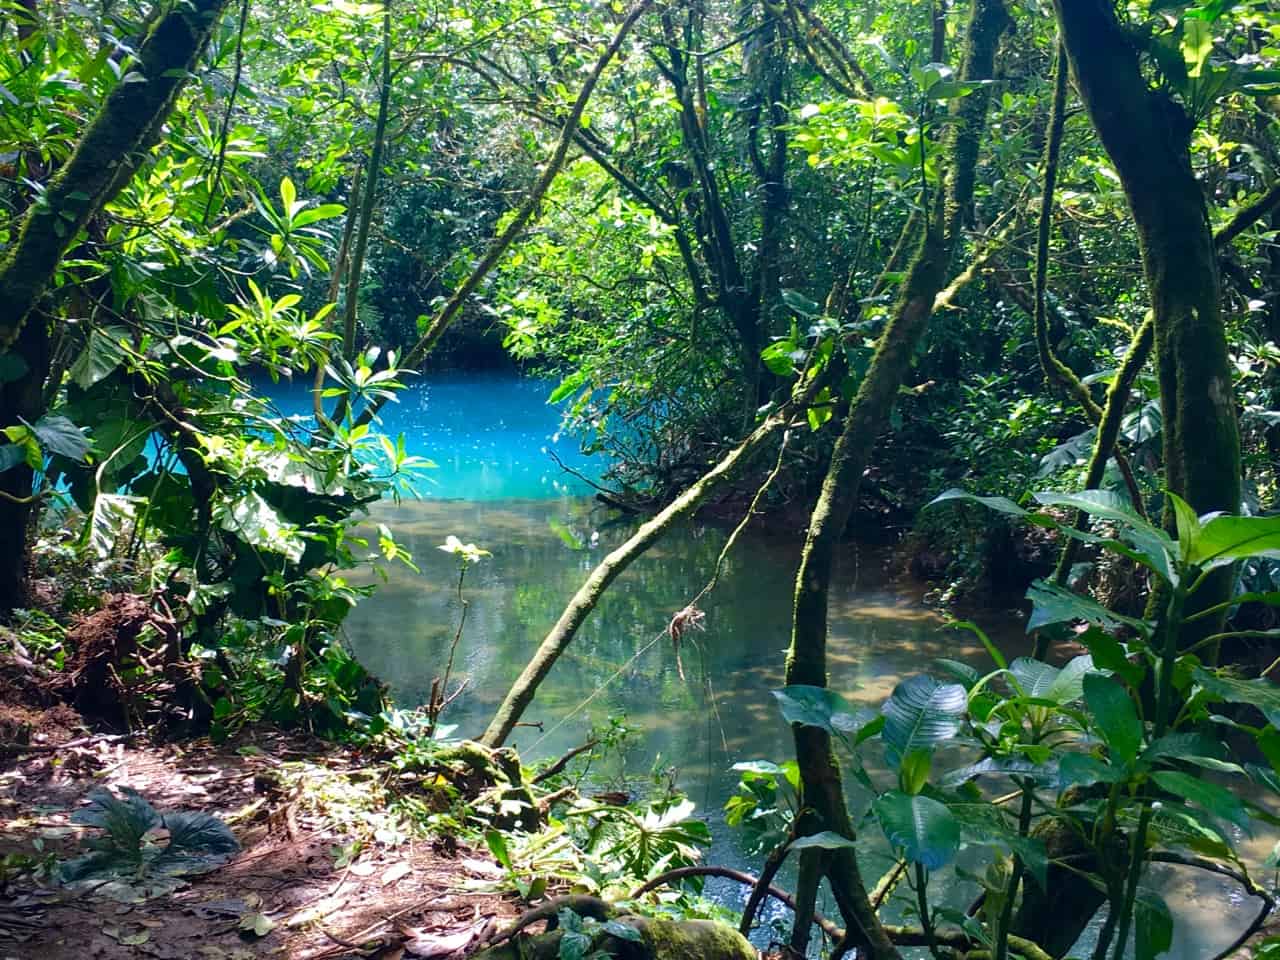 Los Teñidores v Kostarice, kde se setkávají dvě řeky čisté vody a jedna se změní na modrou.